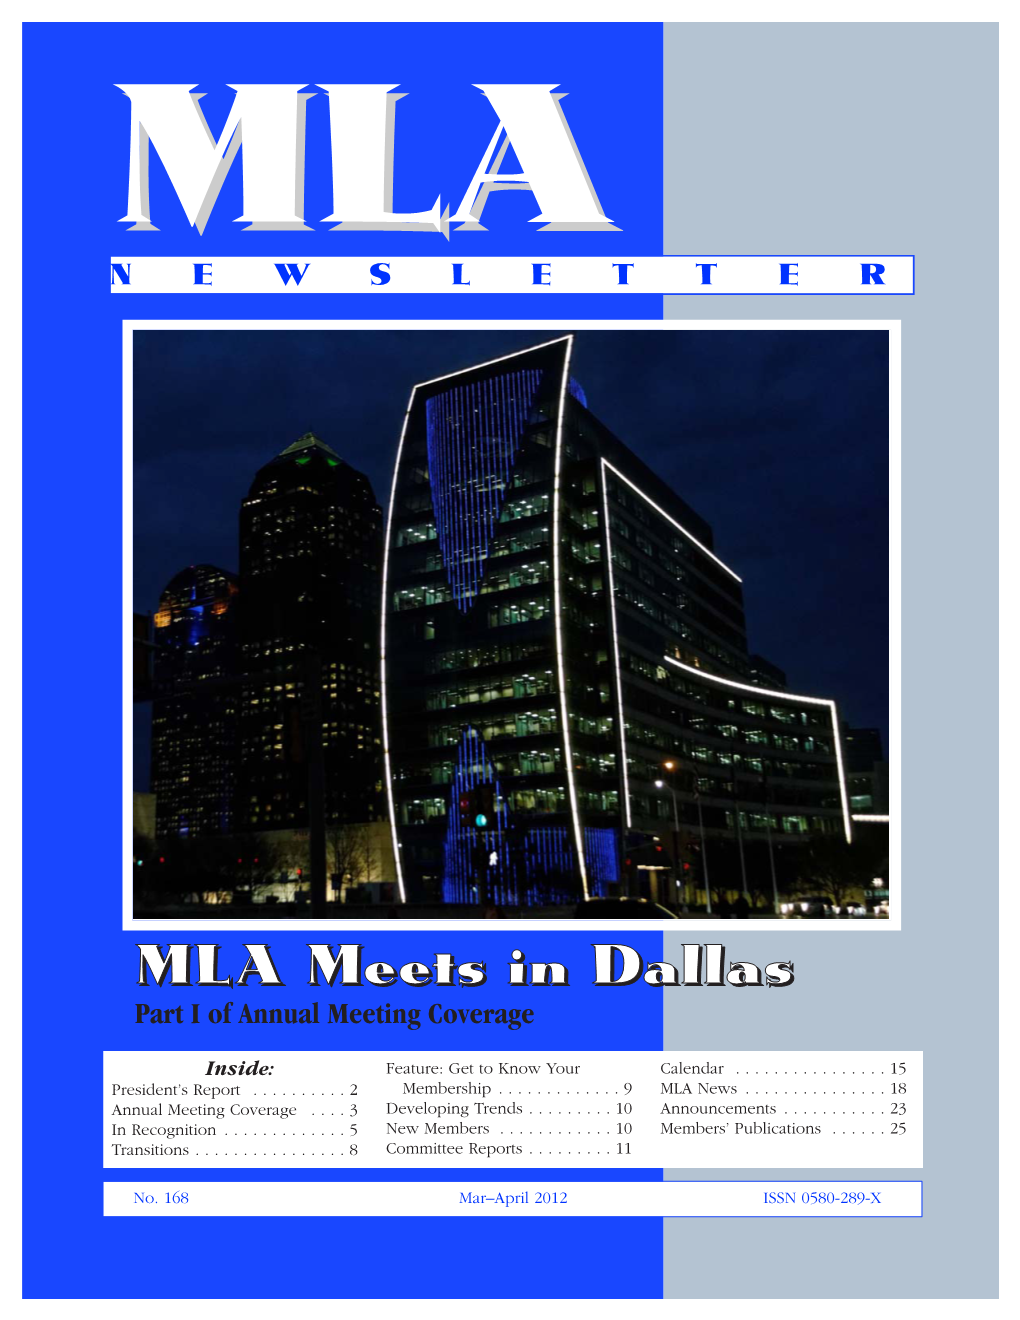 MLA Meets in Dallas